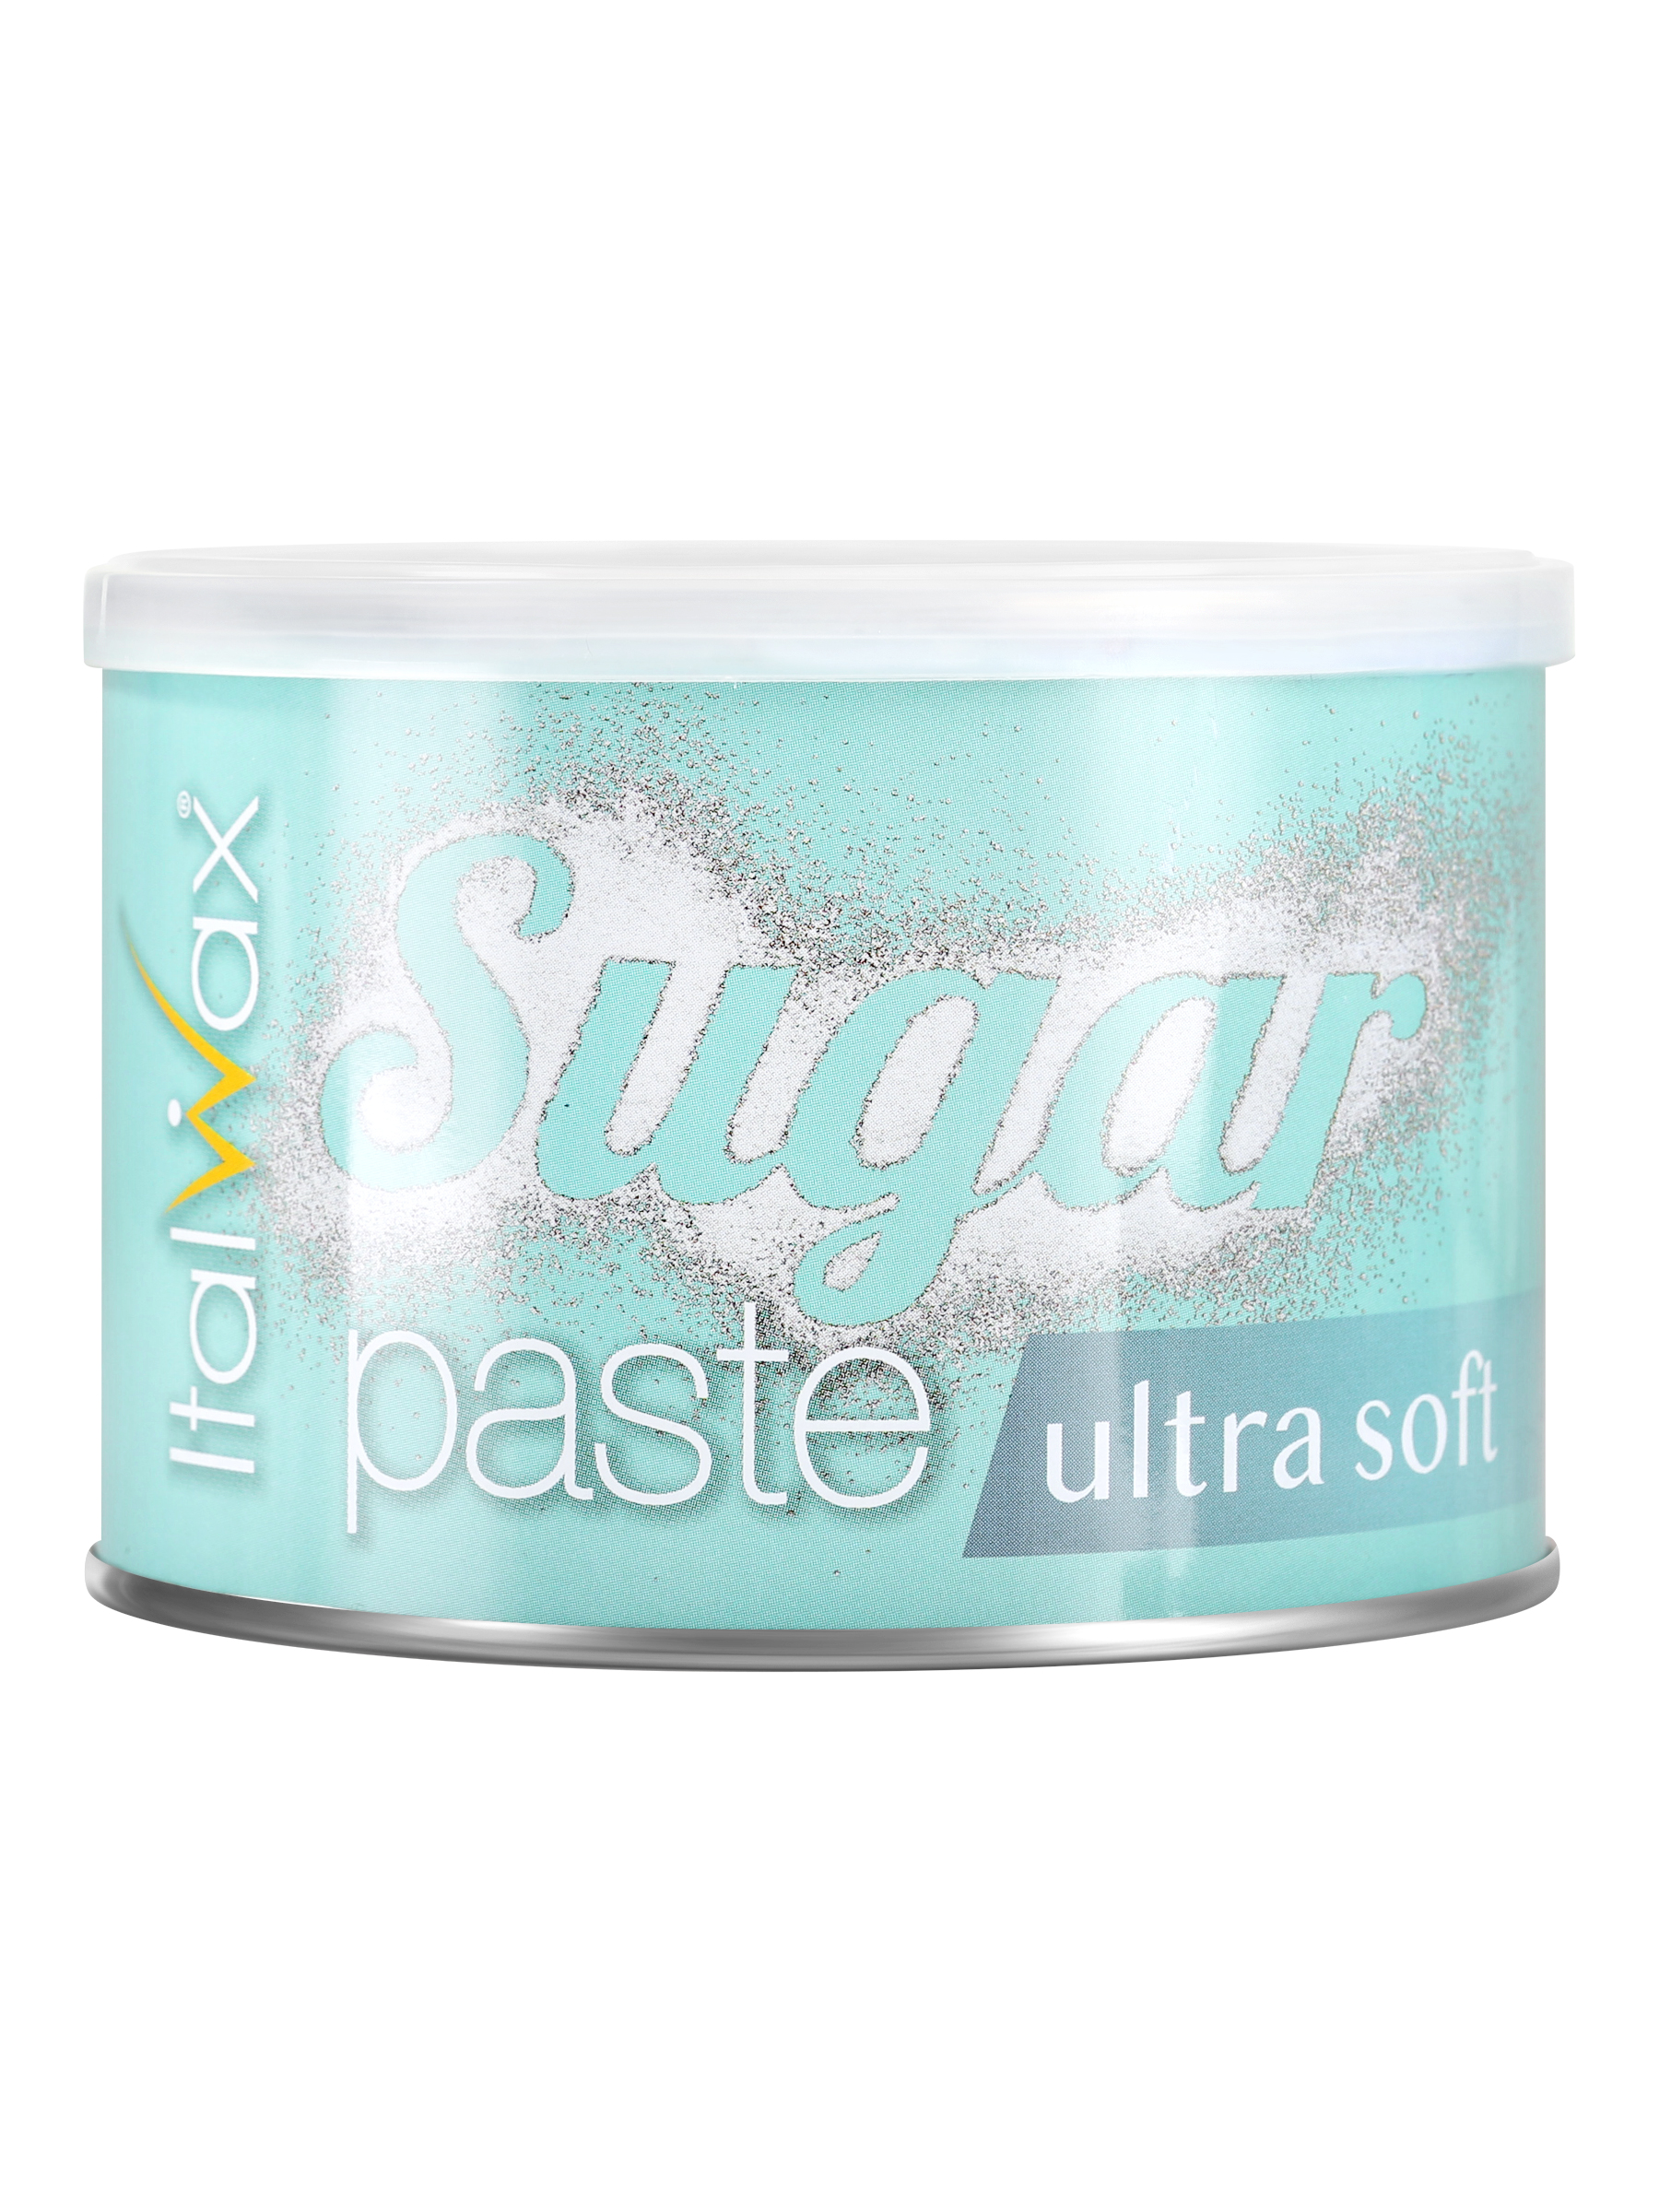 Сахарная паста для шугаринга Italwax в банке Ultra soft мягкая, удаление волос, 600 г сахарная паста мягкой консистенции для шугаринга мягкая и легкая